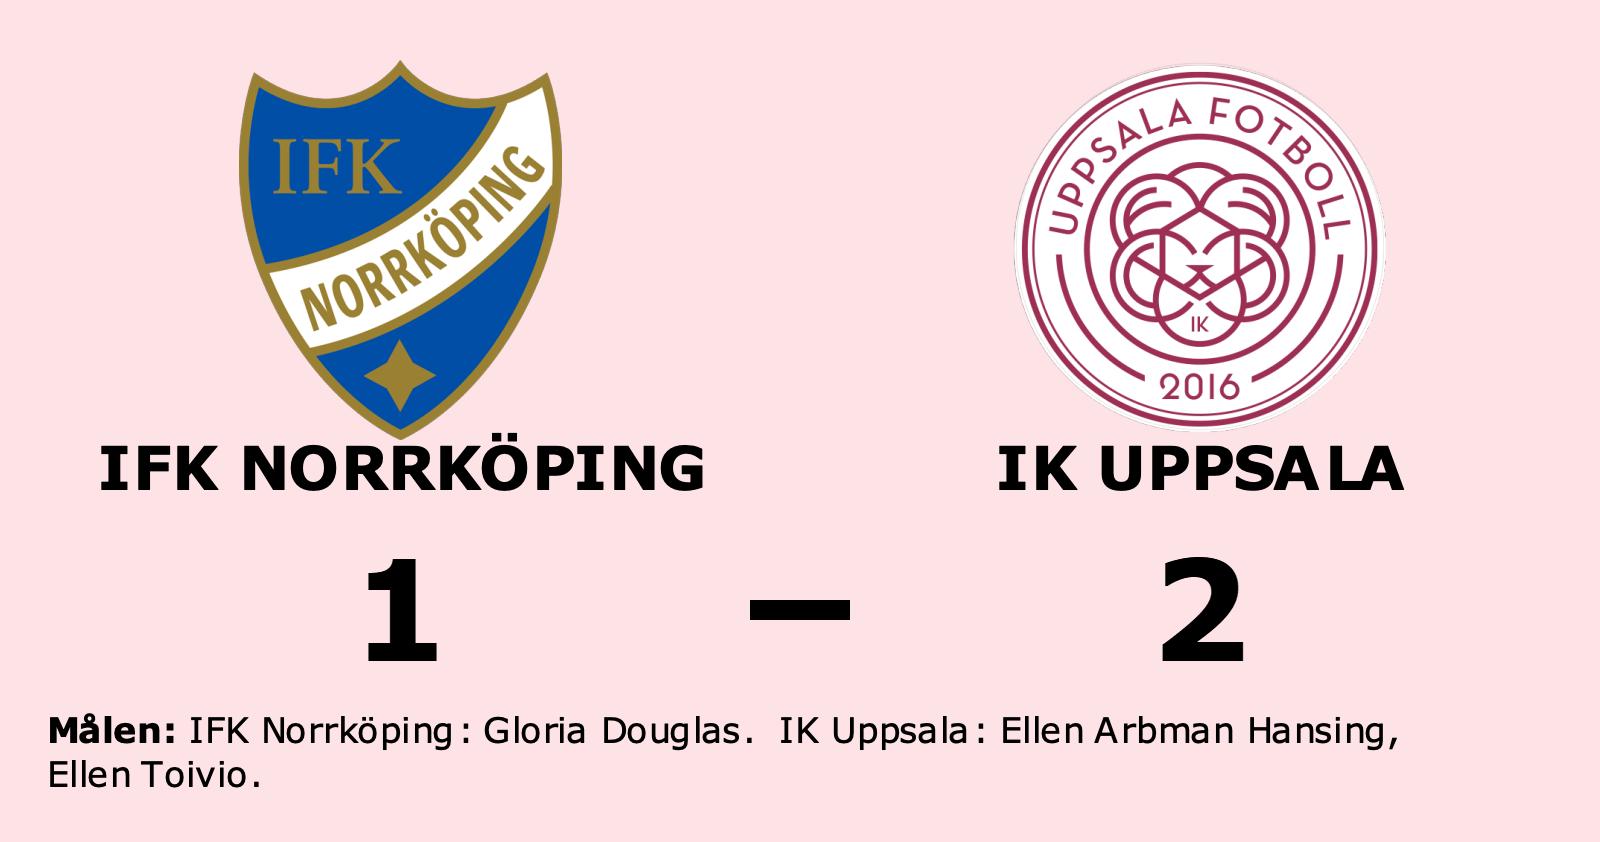 IFK Norrköping: Gloria Douglas enda målskytt när IFK Norrköping föll